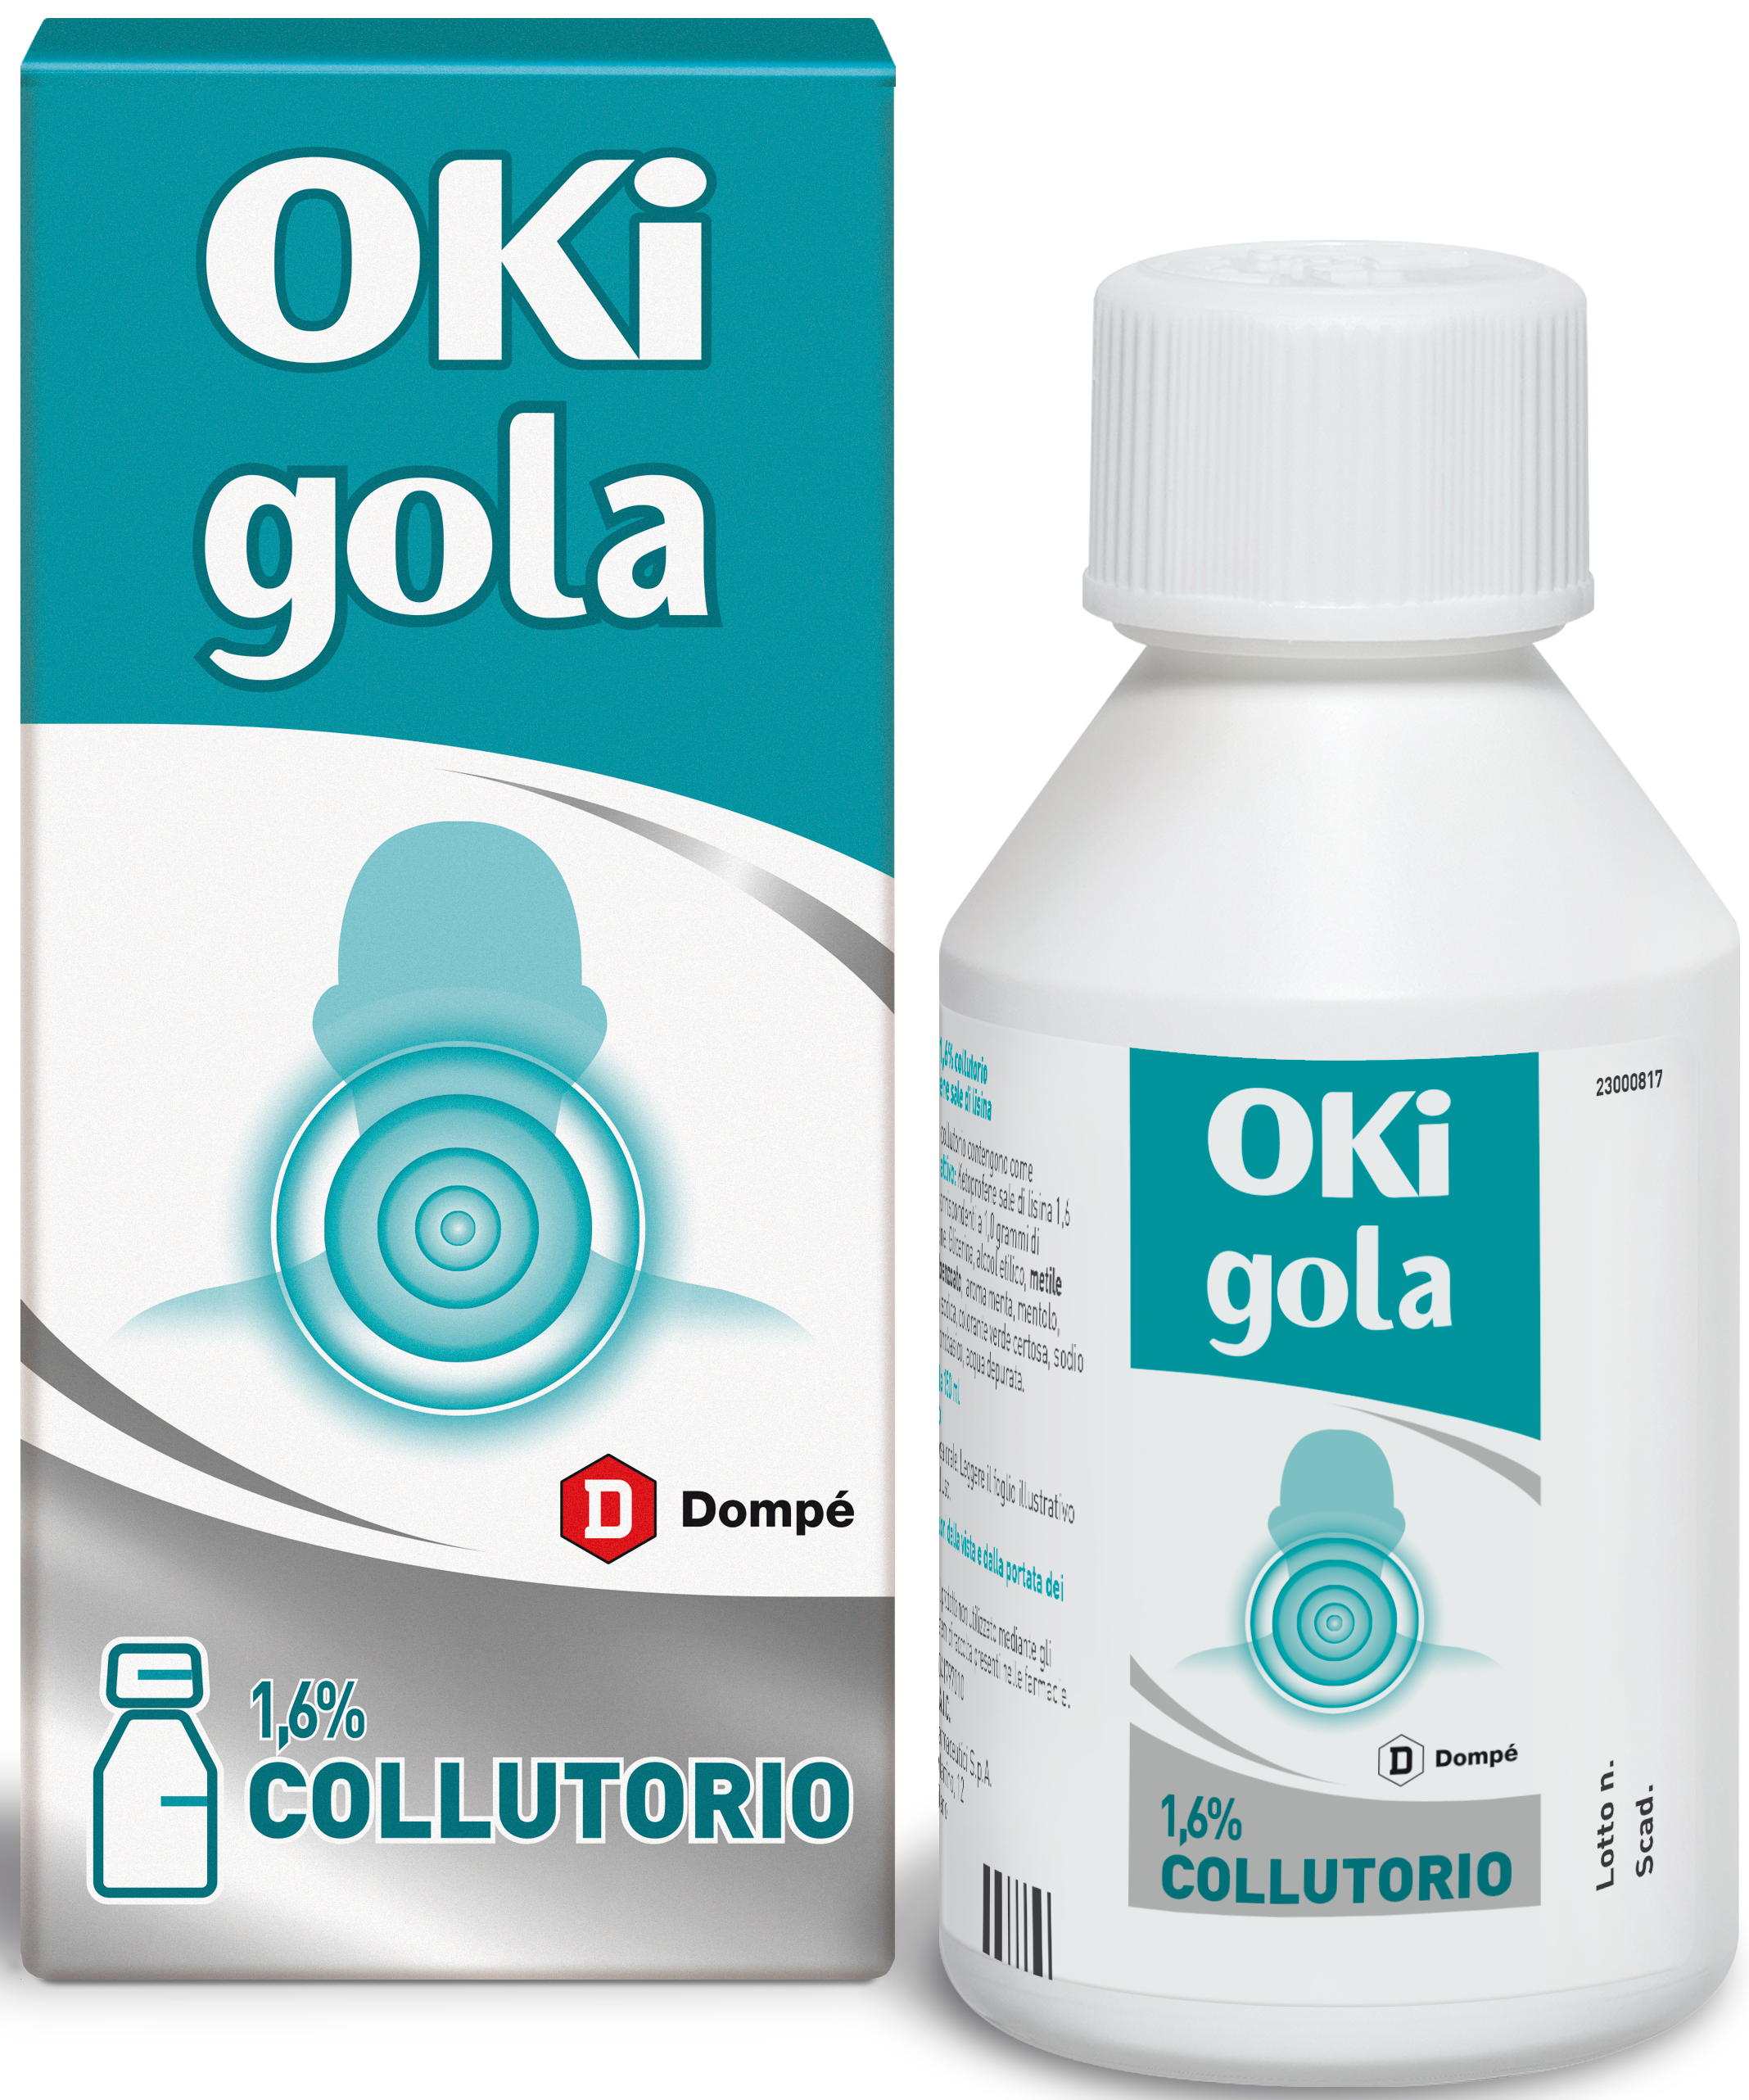 Image of Oki Infiammazione e Dolore Ketoprofene Analgesico Collutorio 150 ml